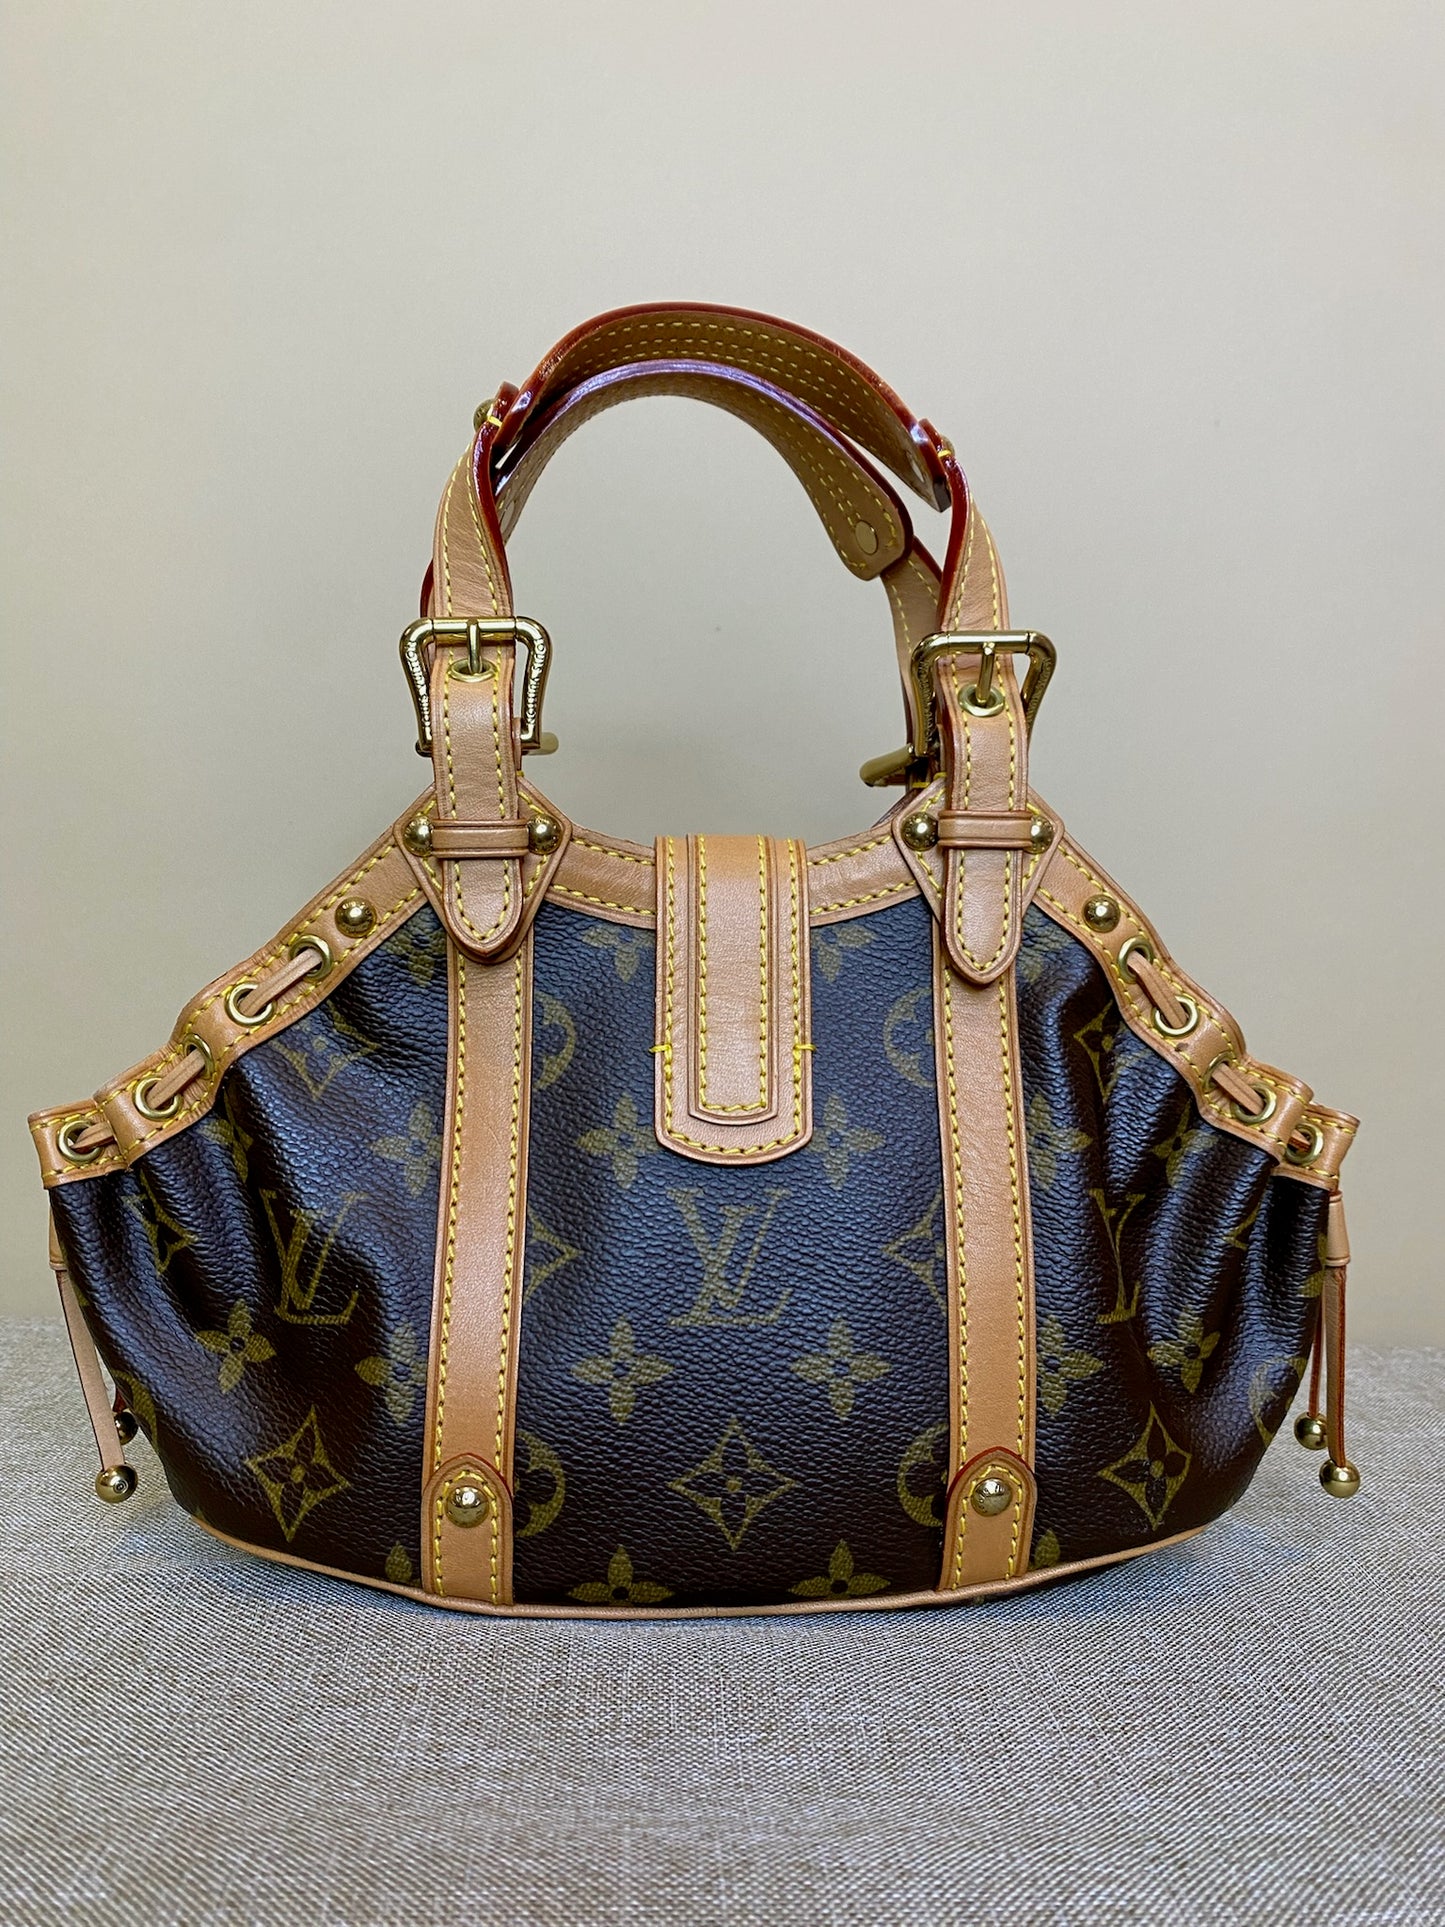 Theda leather handbag